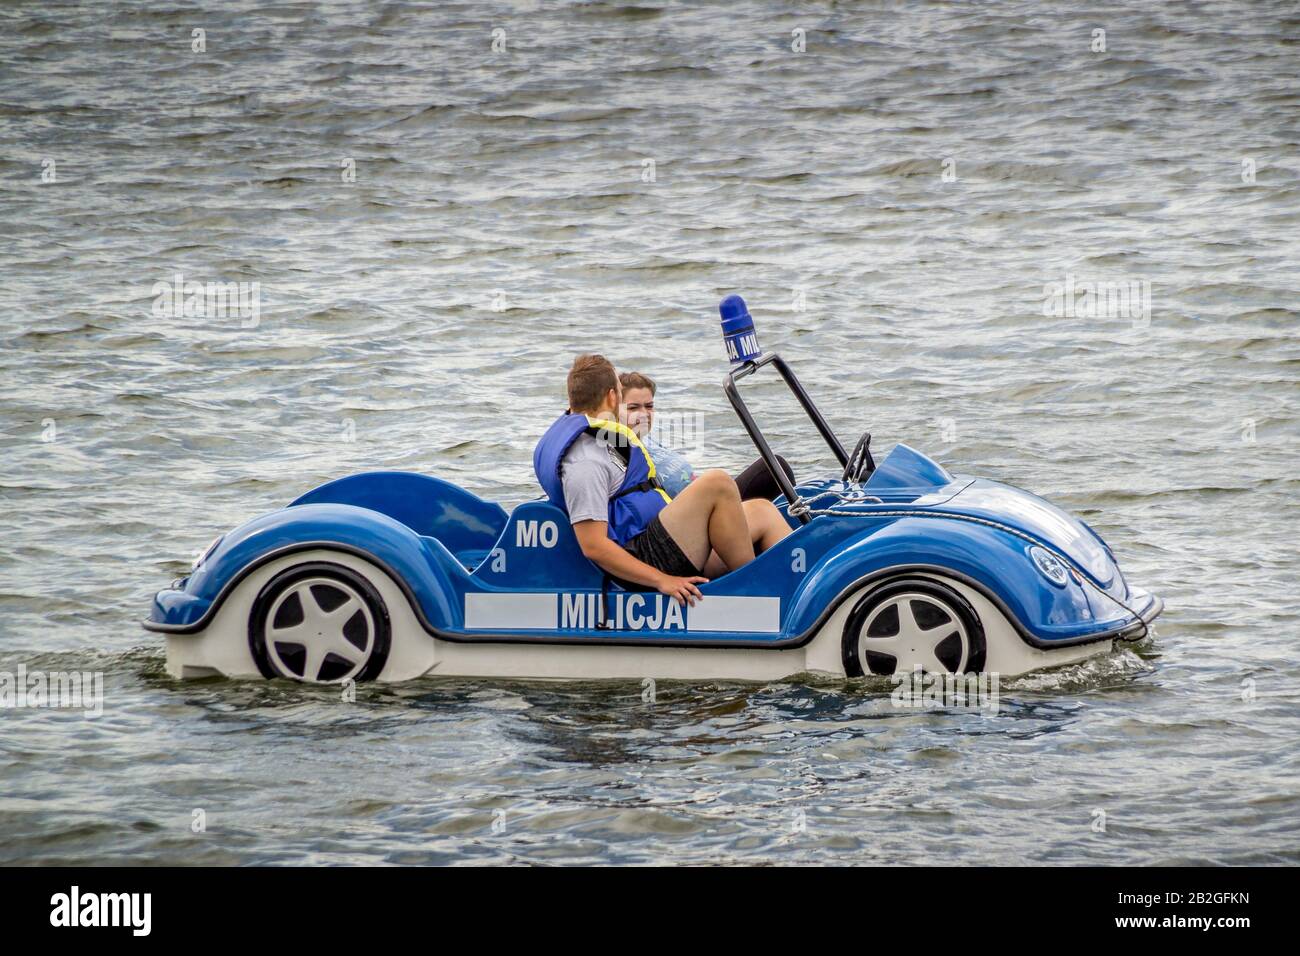 Kartuzy, Polen - 03 août 2016 : un vélo d'eau amusant fait comme une voiture de police polonaise Banque D'Images